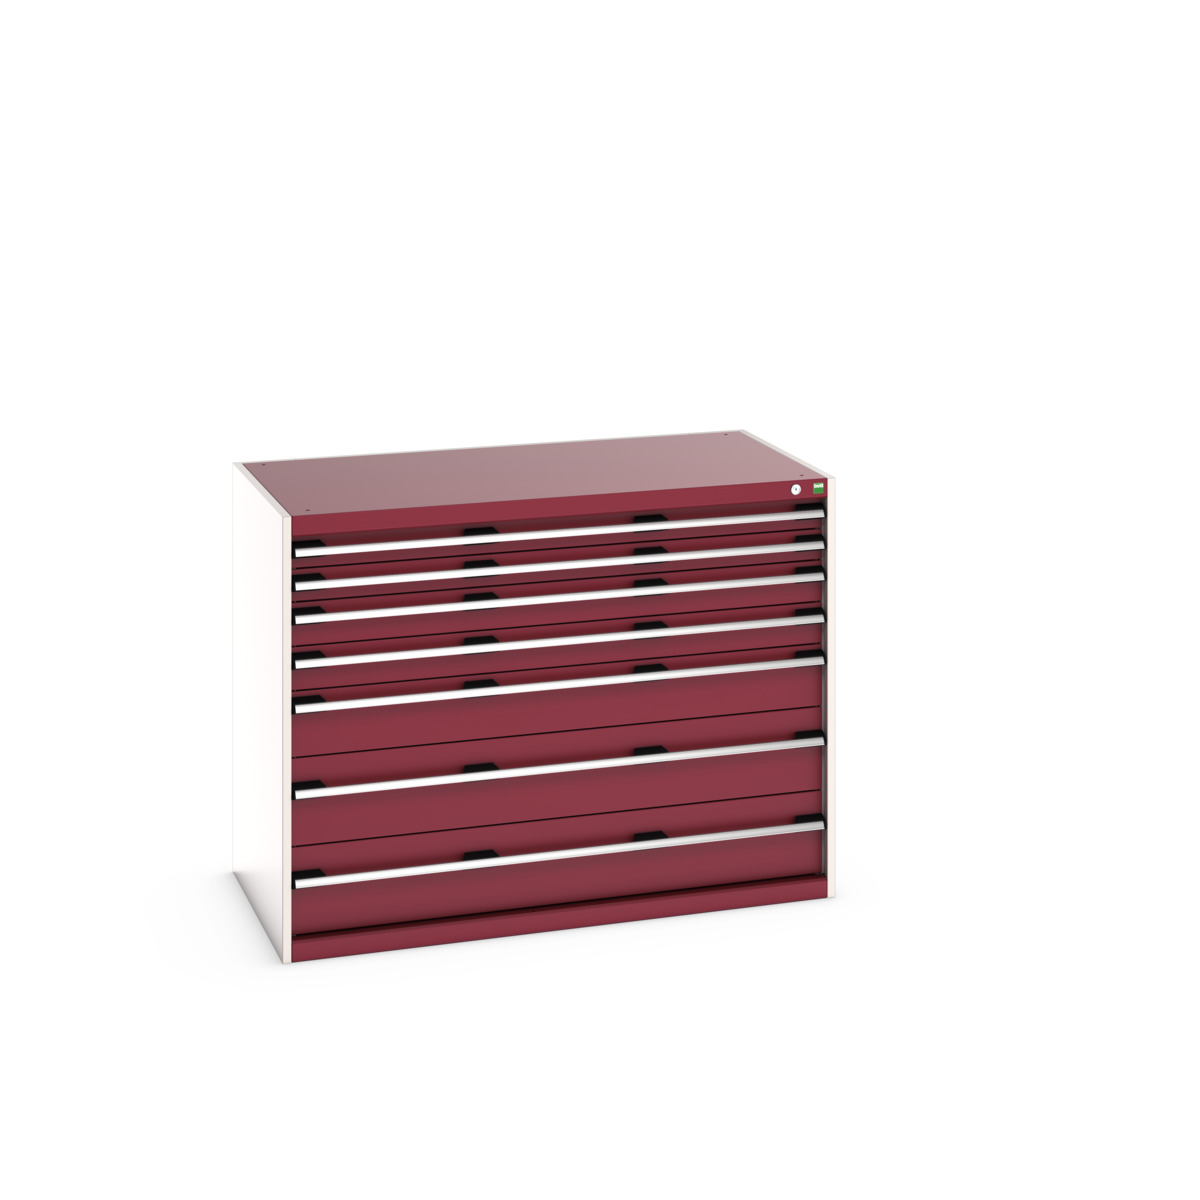 40030016.24V - cubio drawer cabinet